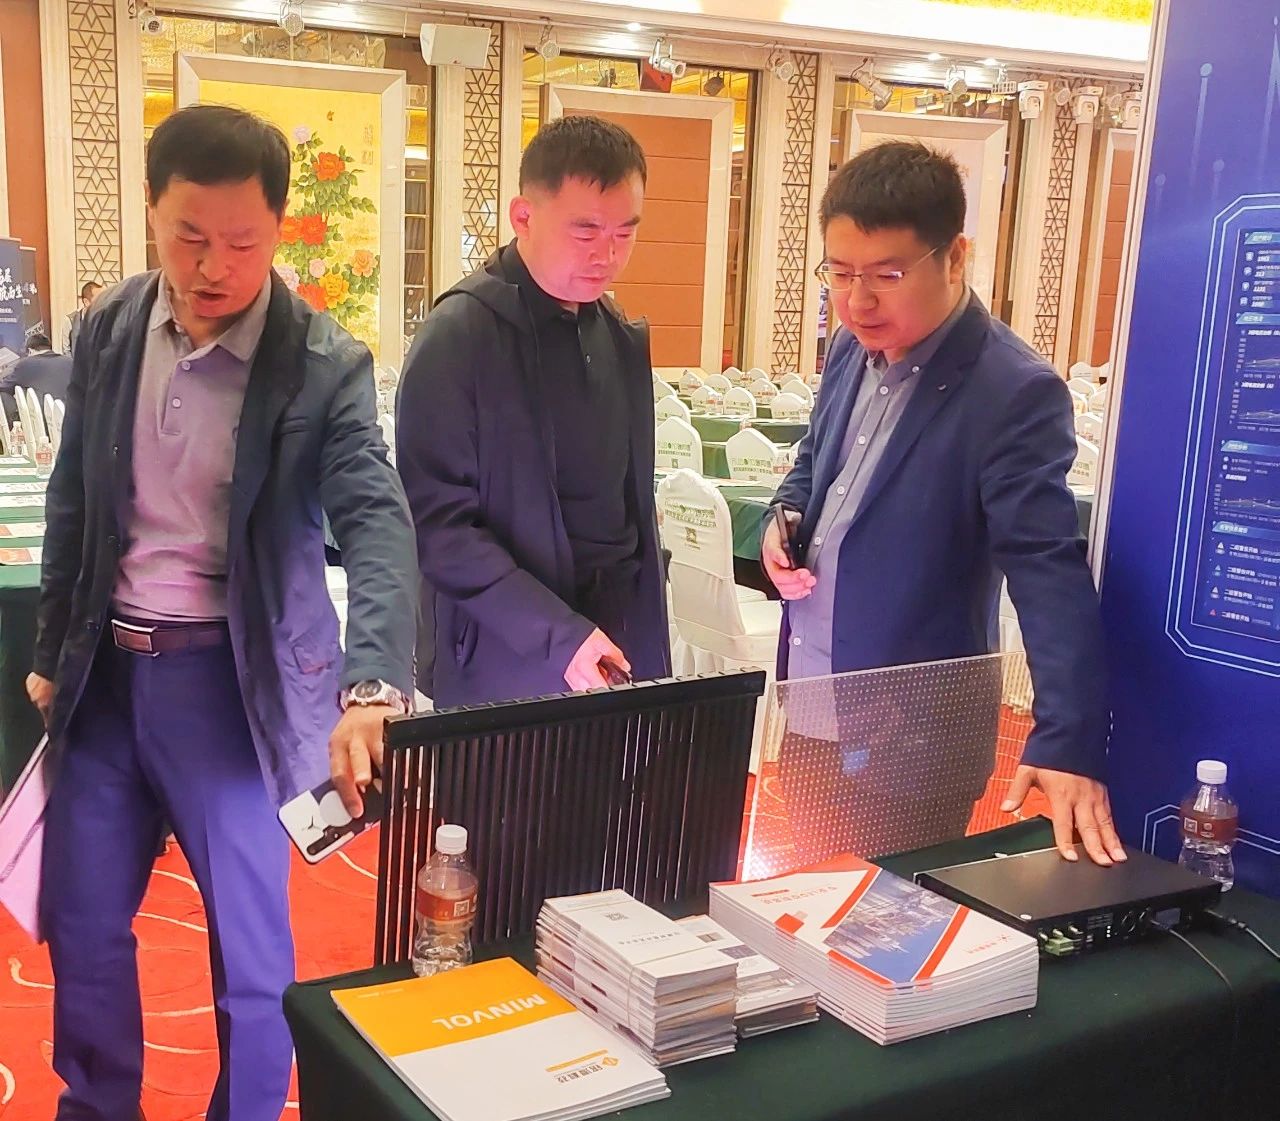 点亮未来，共创美好——黑龙江省夜经济与智慧照明发展大会